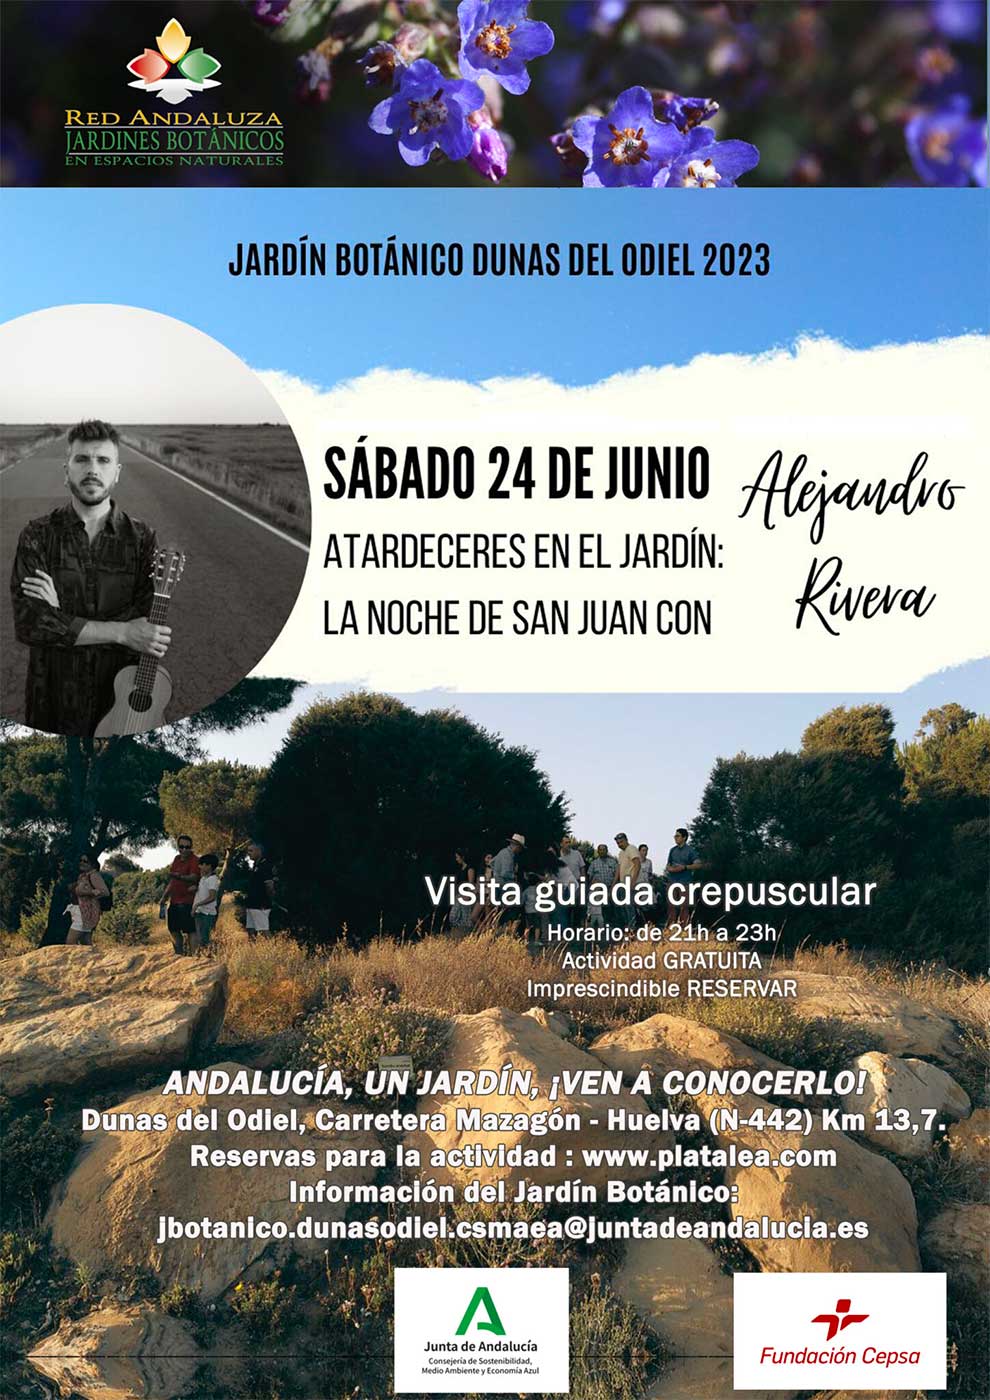 Concierto Alejandro Rivera jardin botanico dunas del odiel 2023 noche de san juan 24 de junio